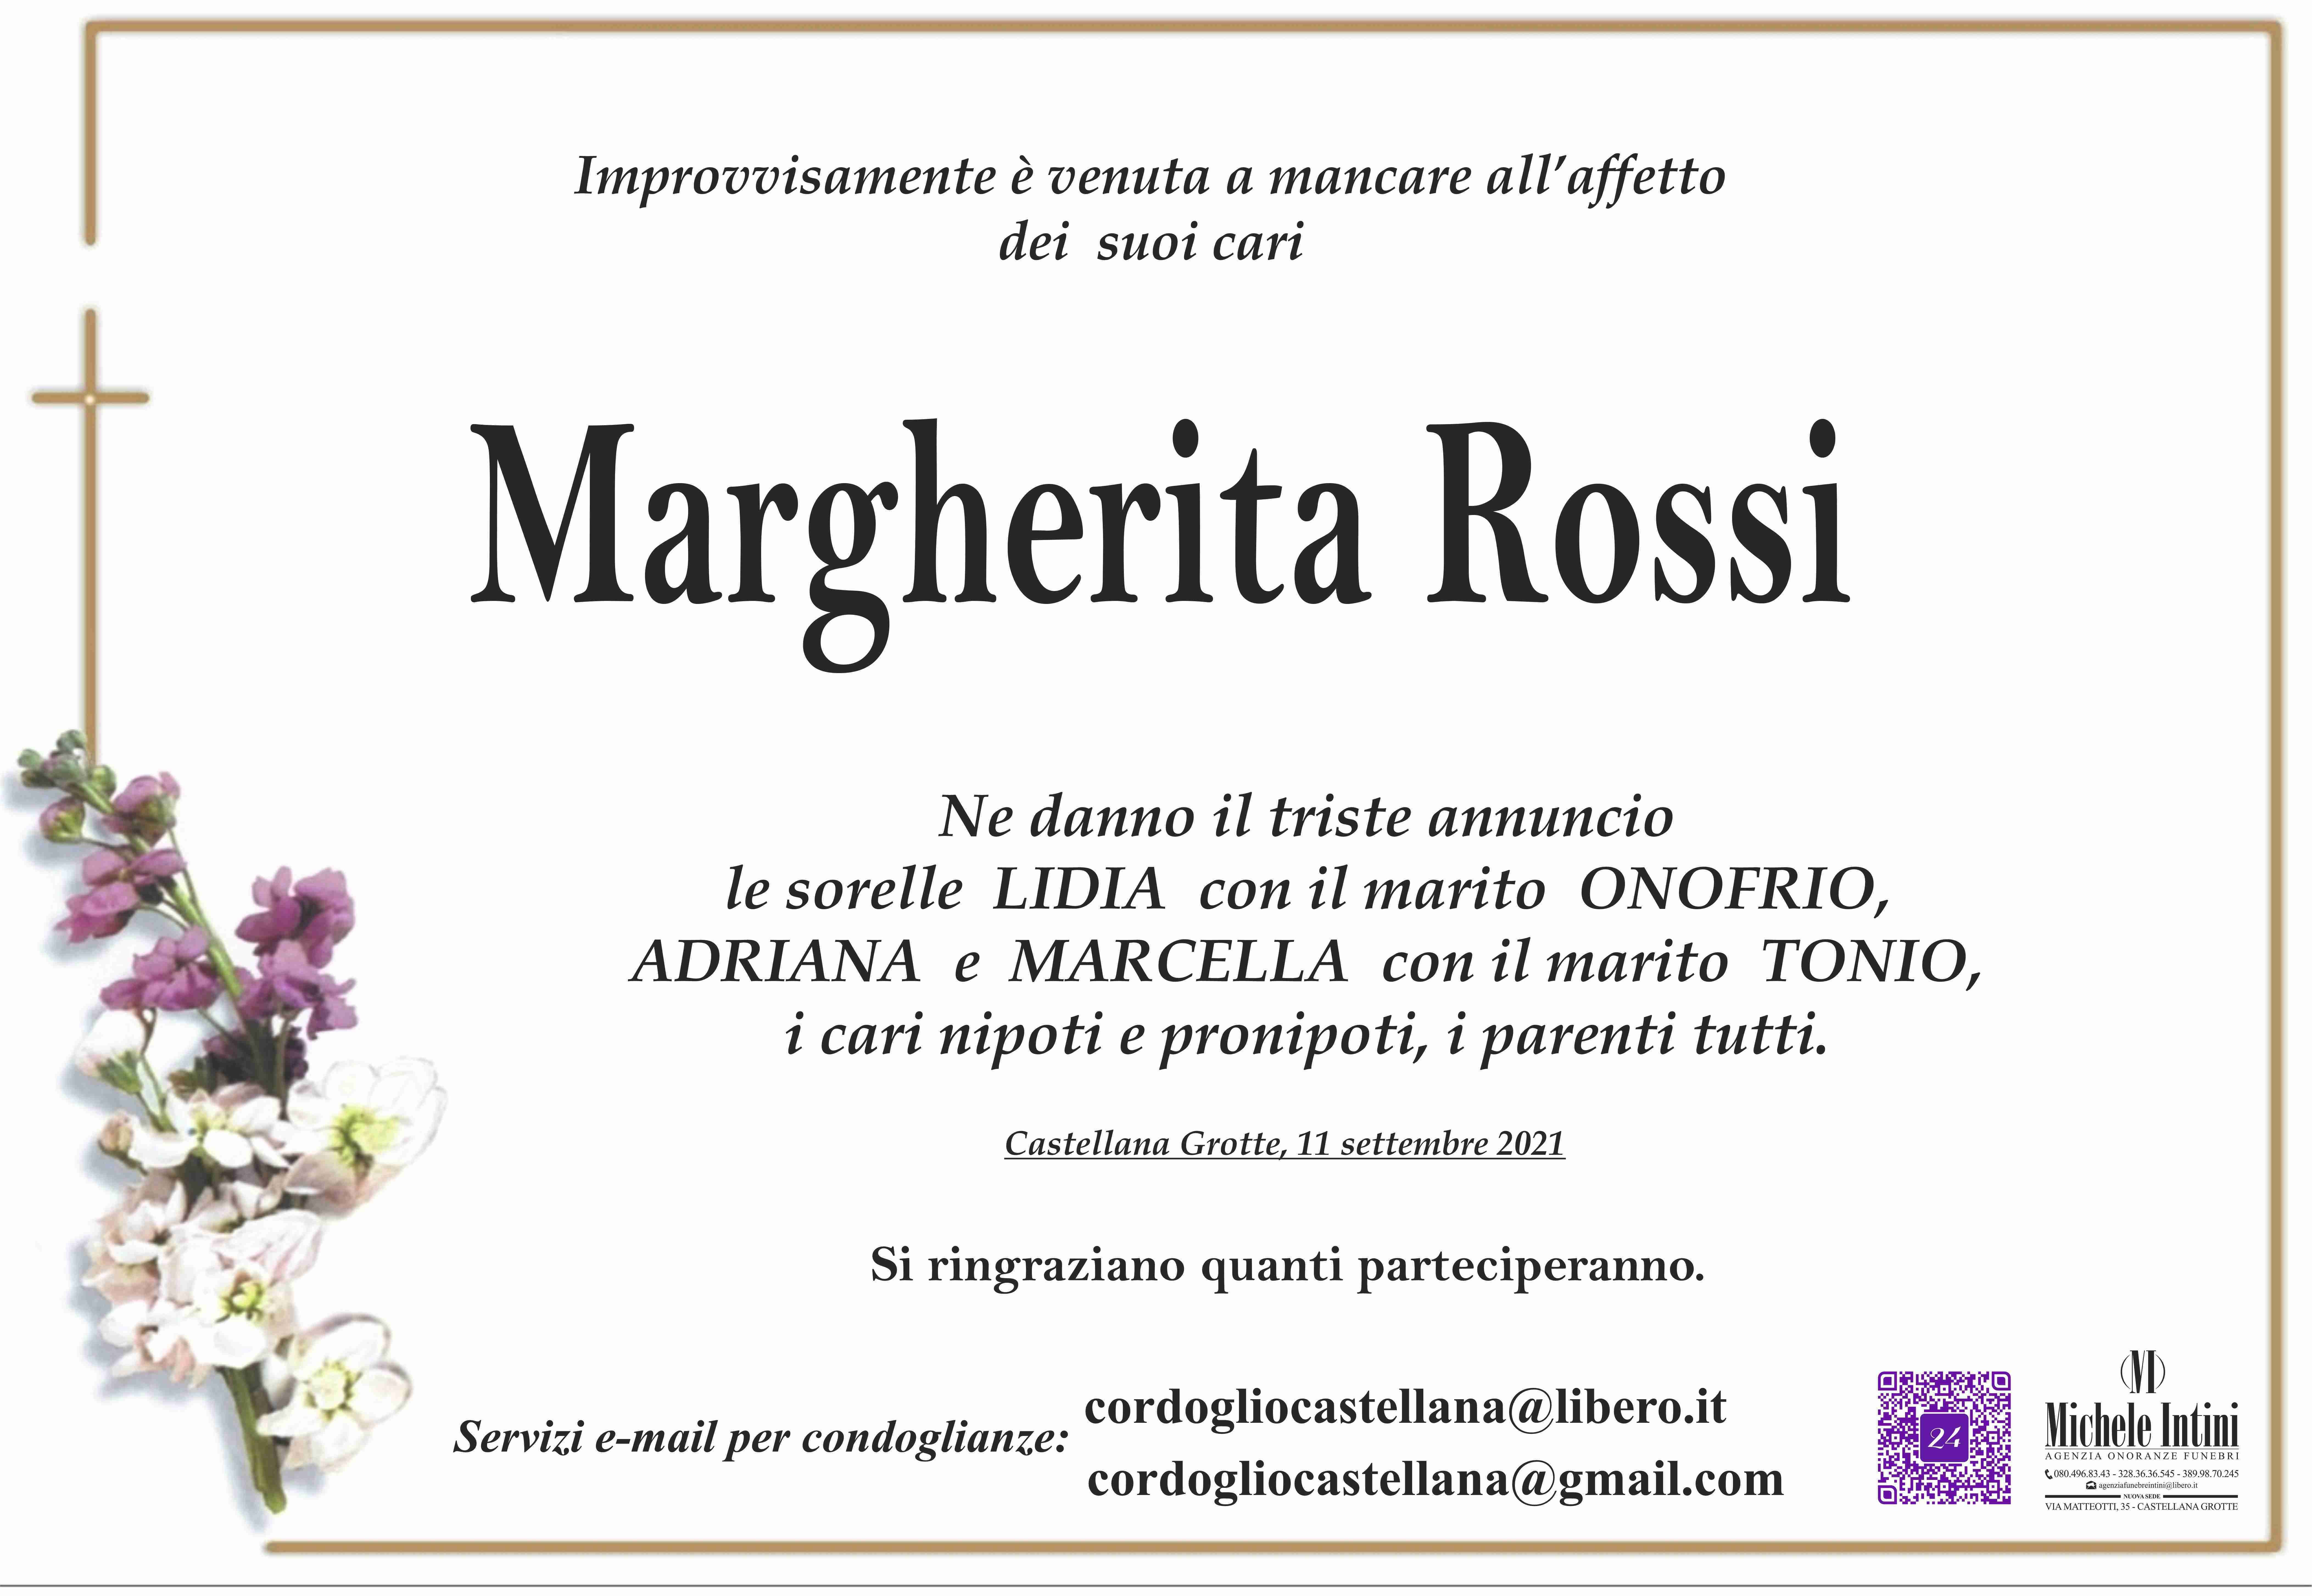 Margherita Rossi